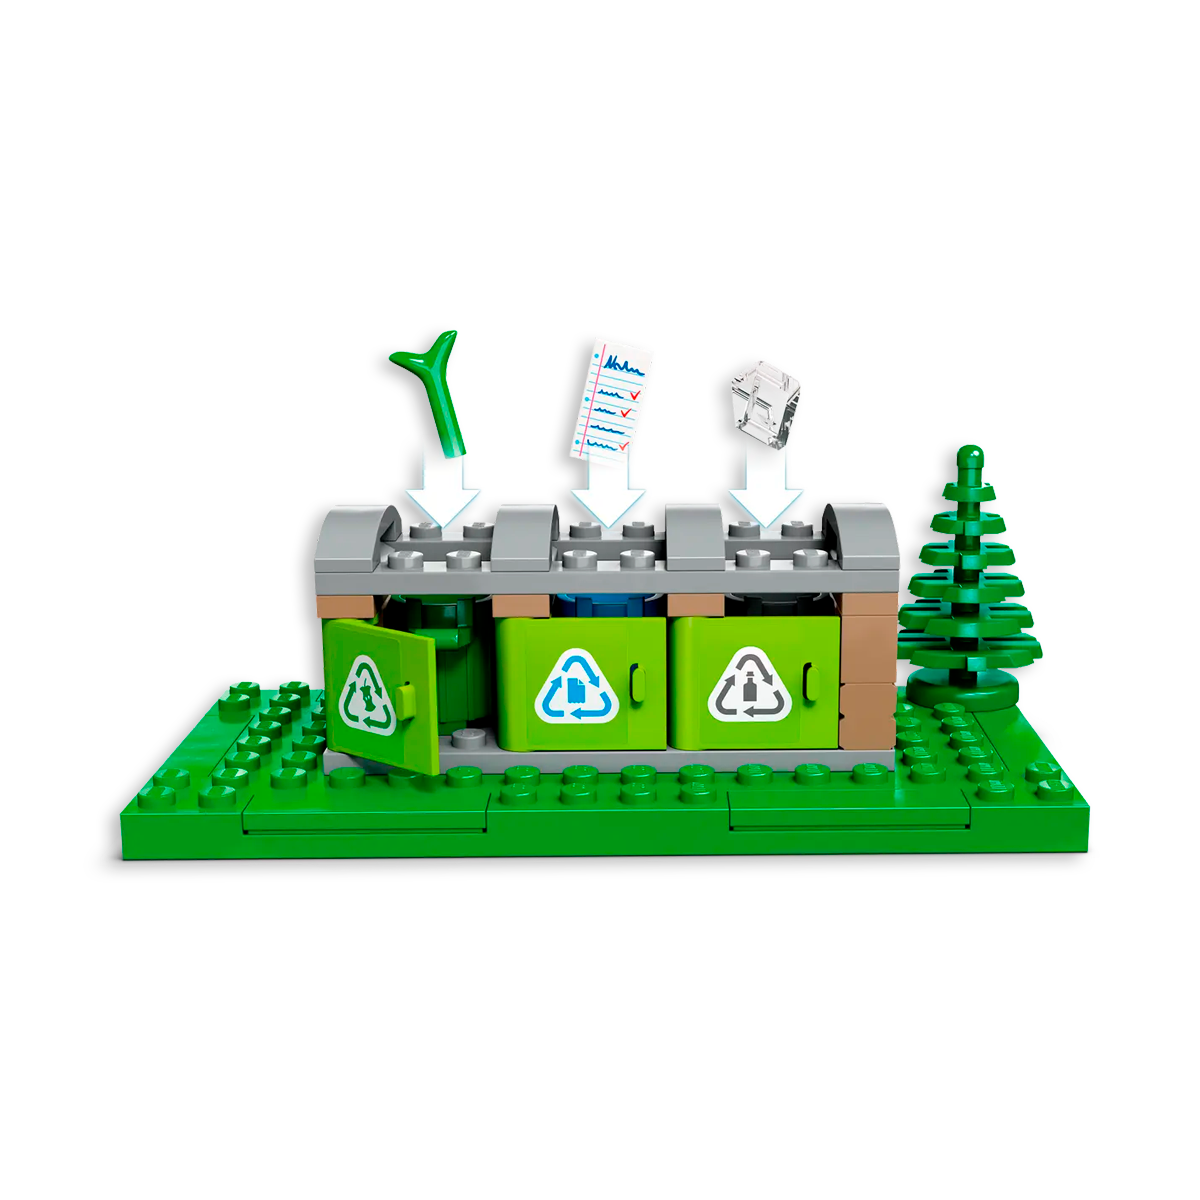 Lego City Camión de Reciclaje